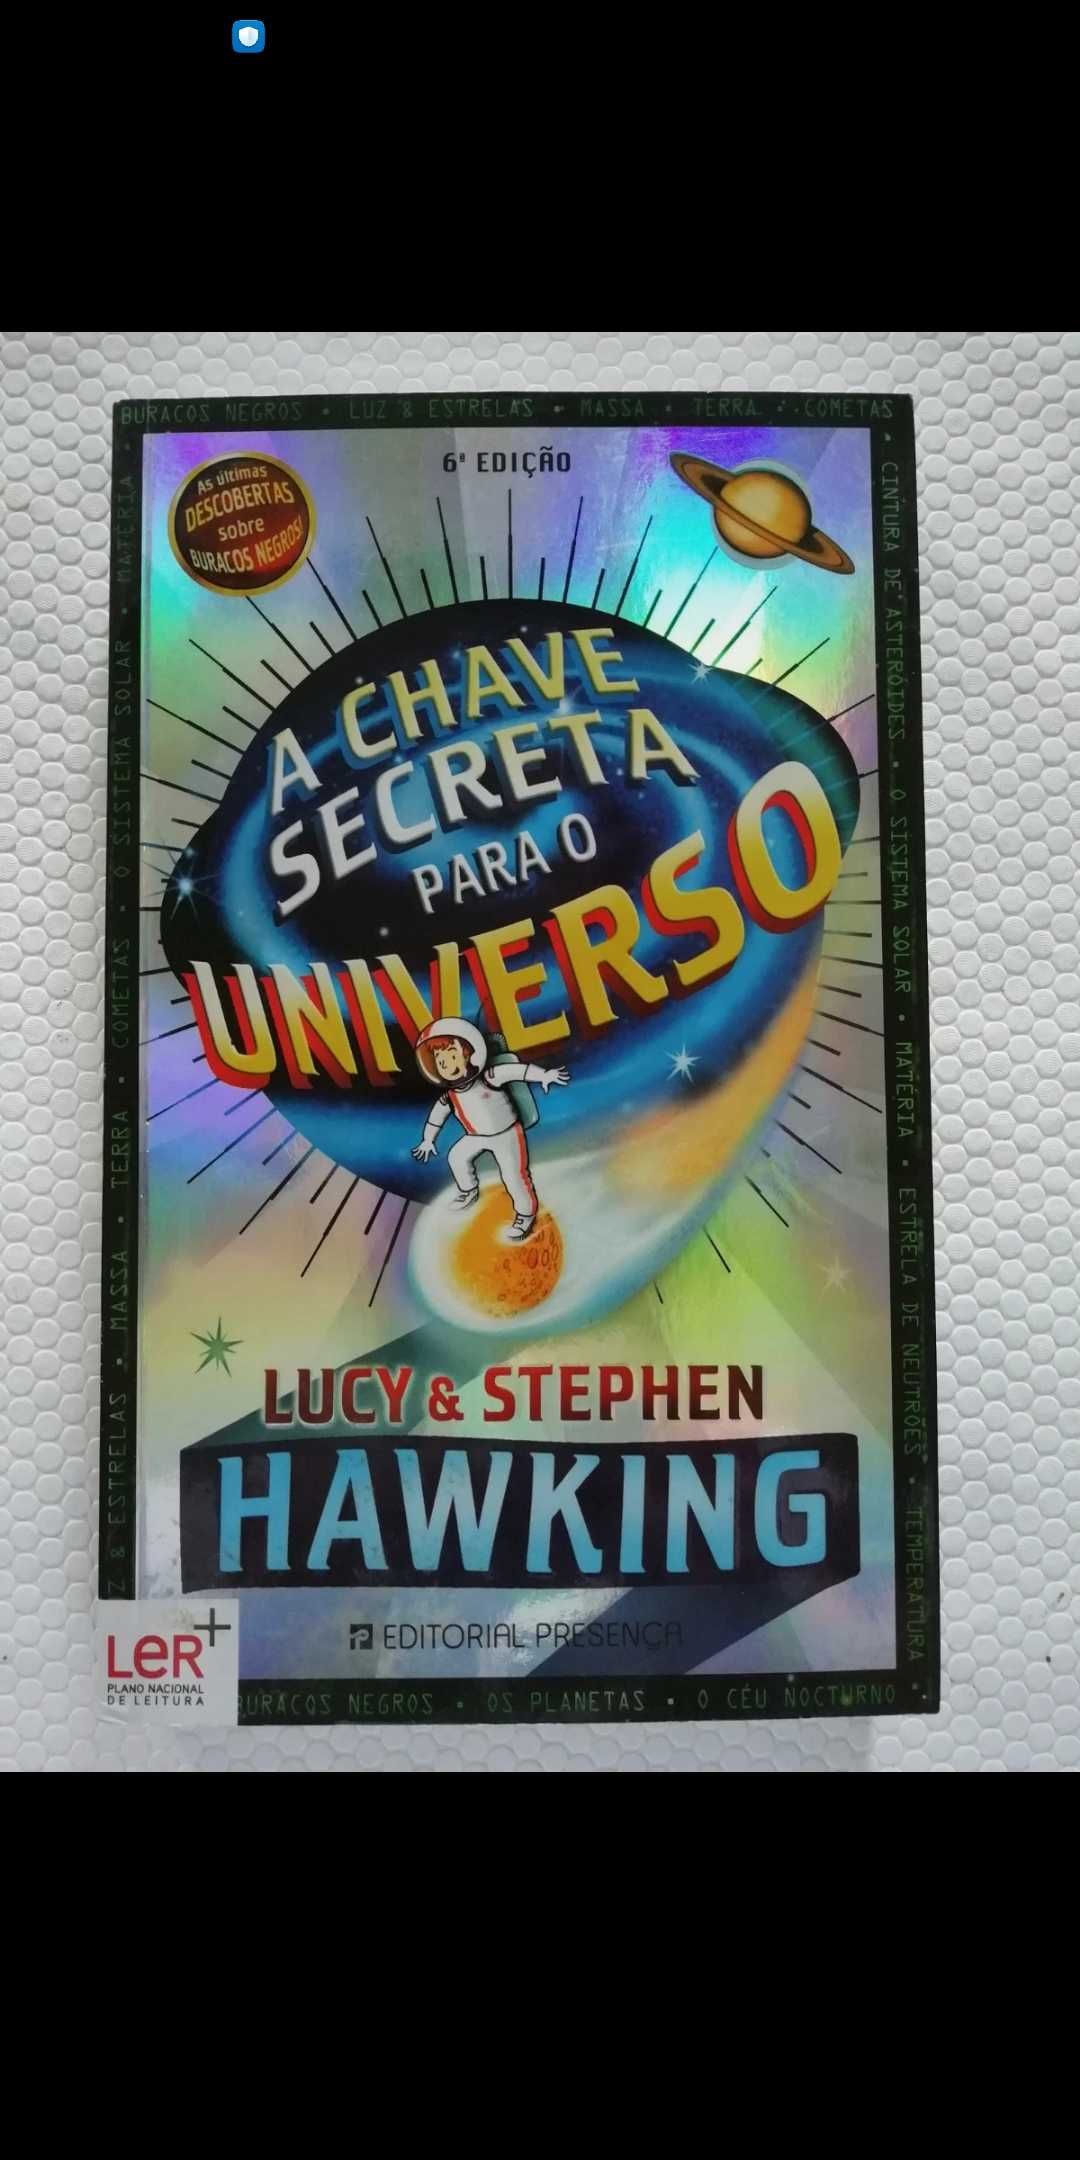 Livro "A chave secreta para o universo", de Lucy & Stephen Hawking,